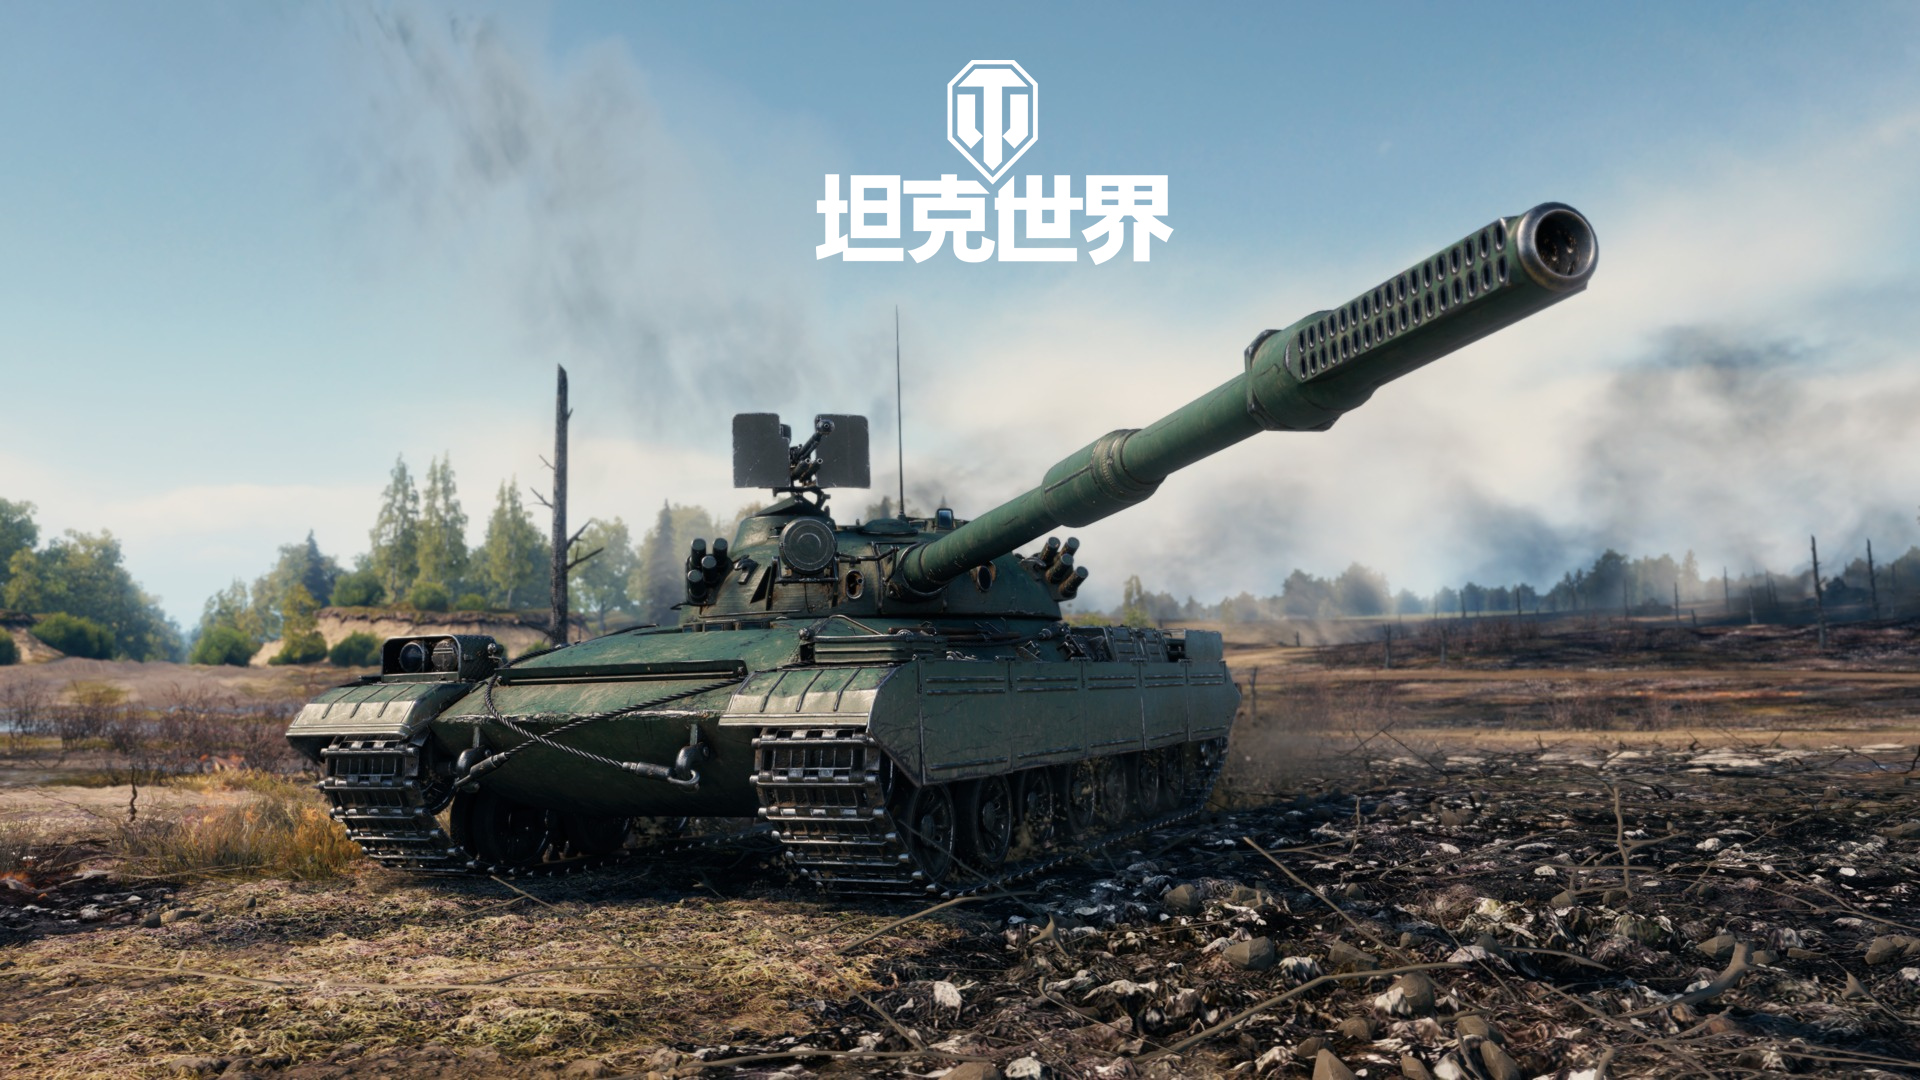 全新拍品BZ-72-1降临坦克世界(挖掘更多战斗生涯乐趣)